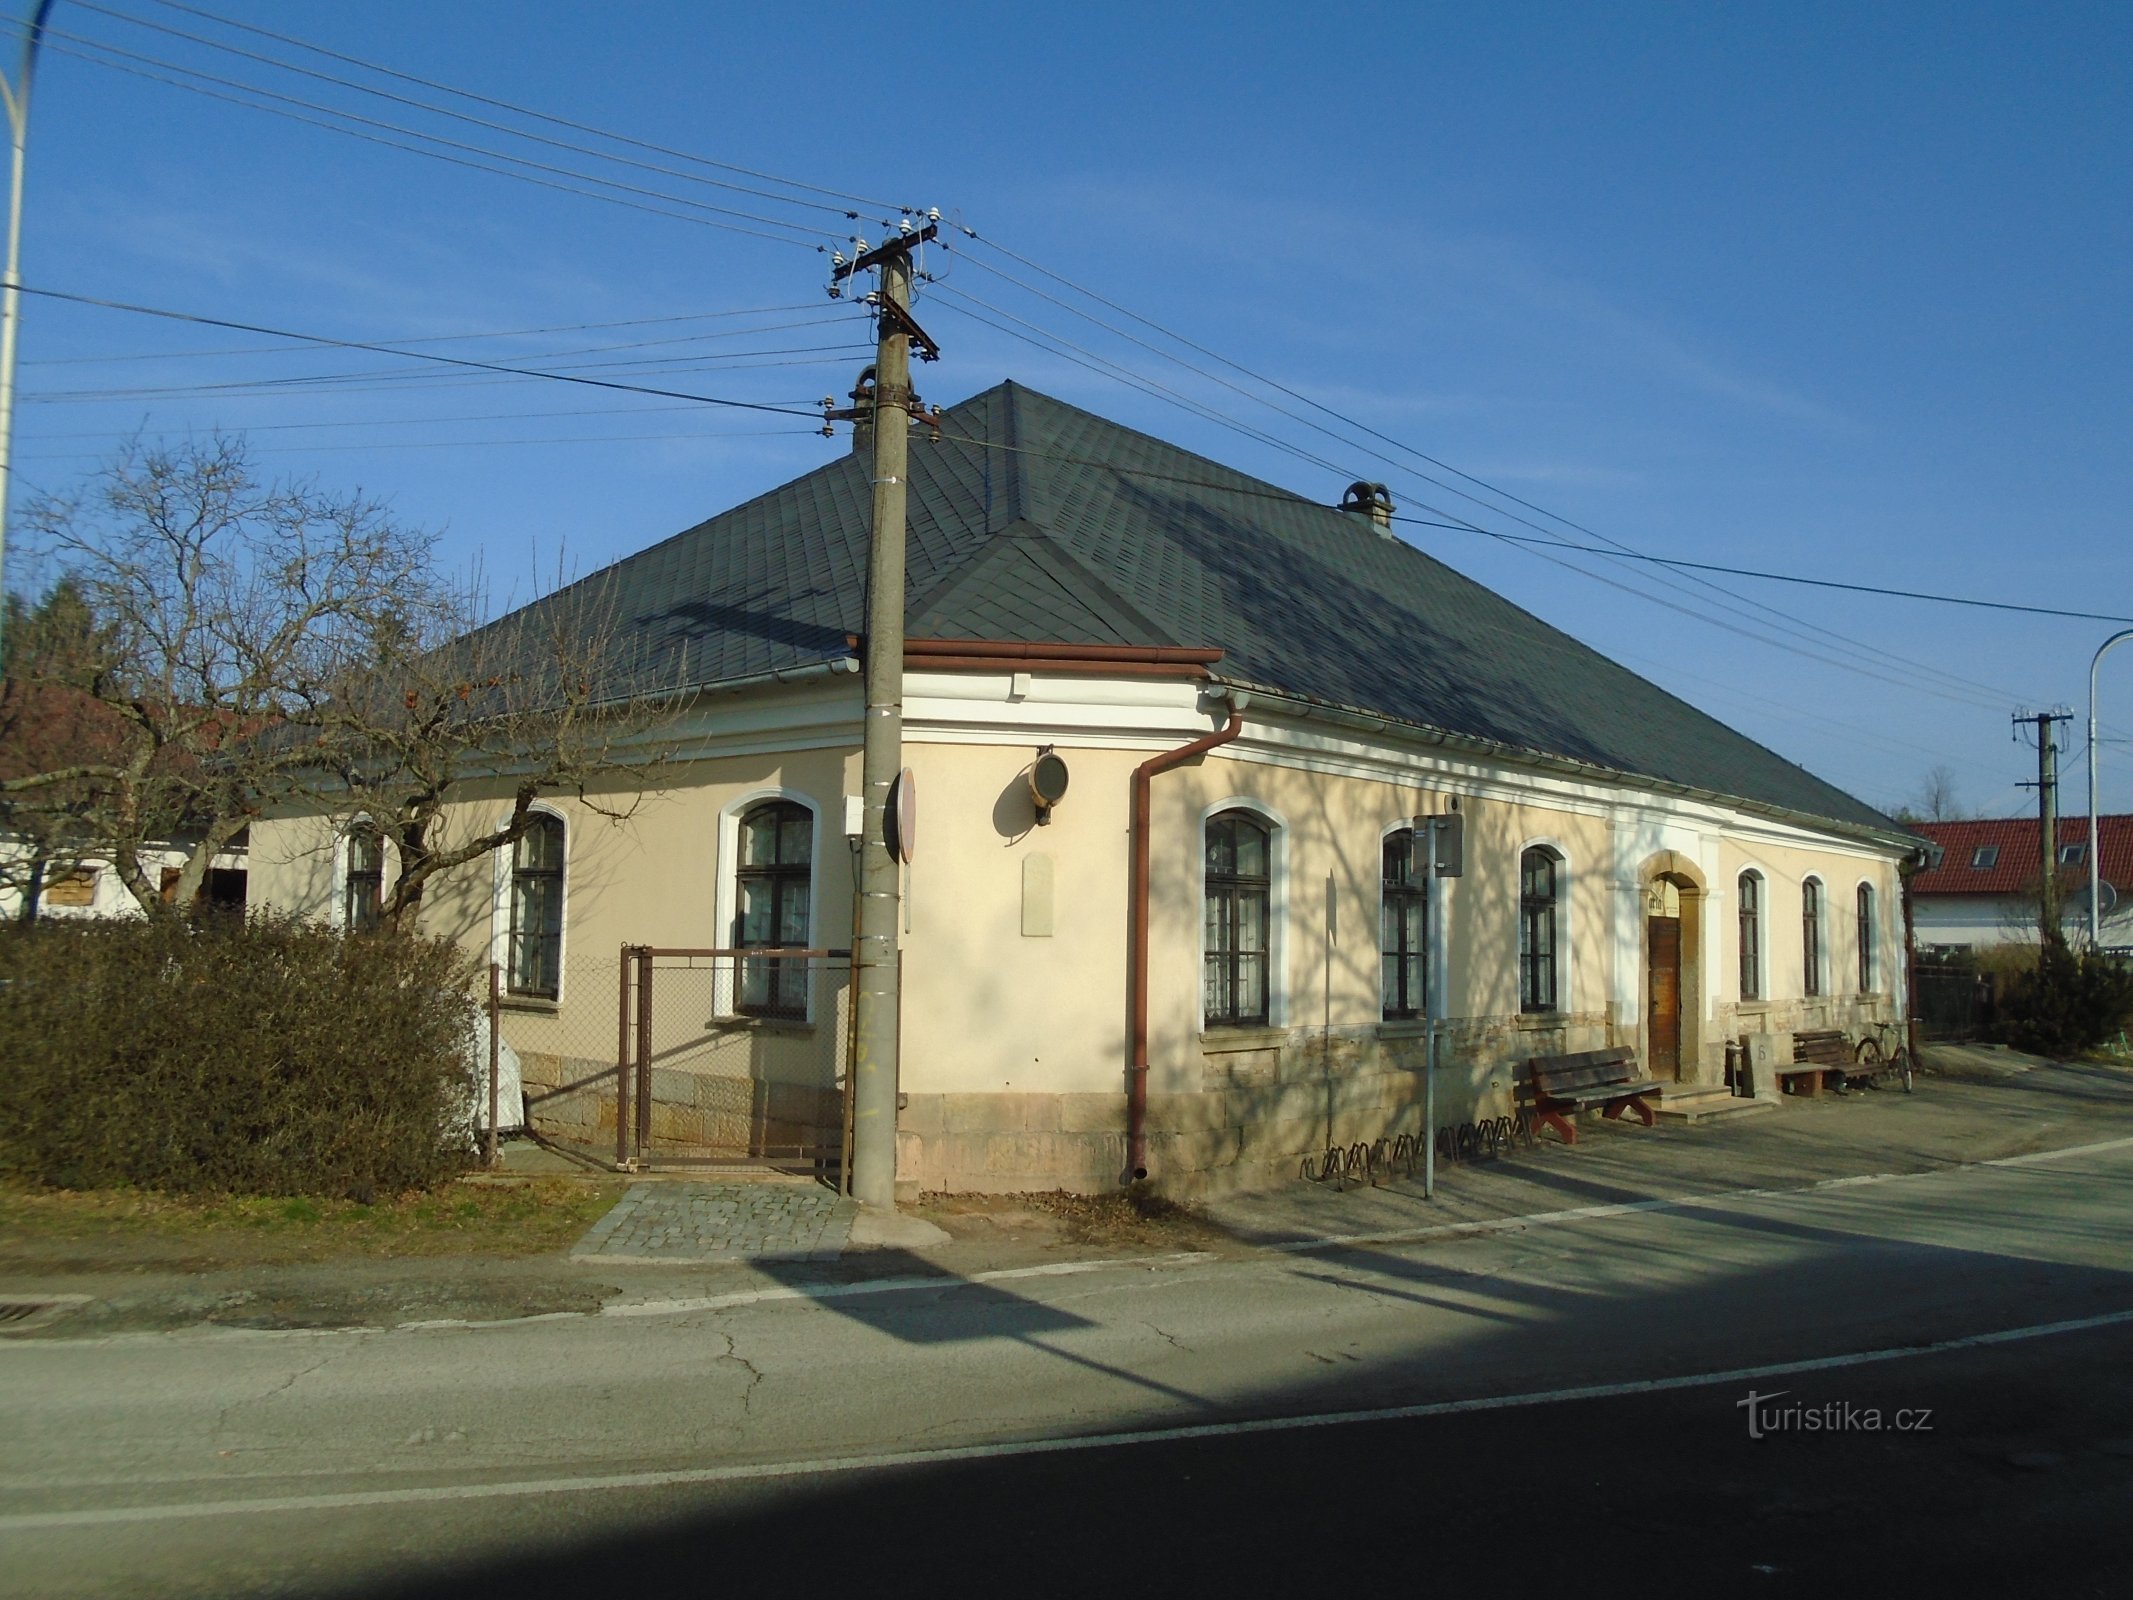 Podhůrská nr. 76 (Hradec Králové, 23.1.2019 ianuarie XNUMX)